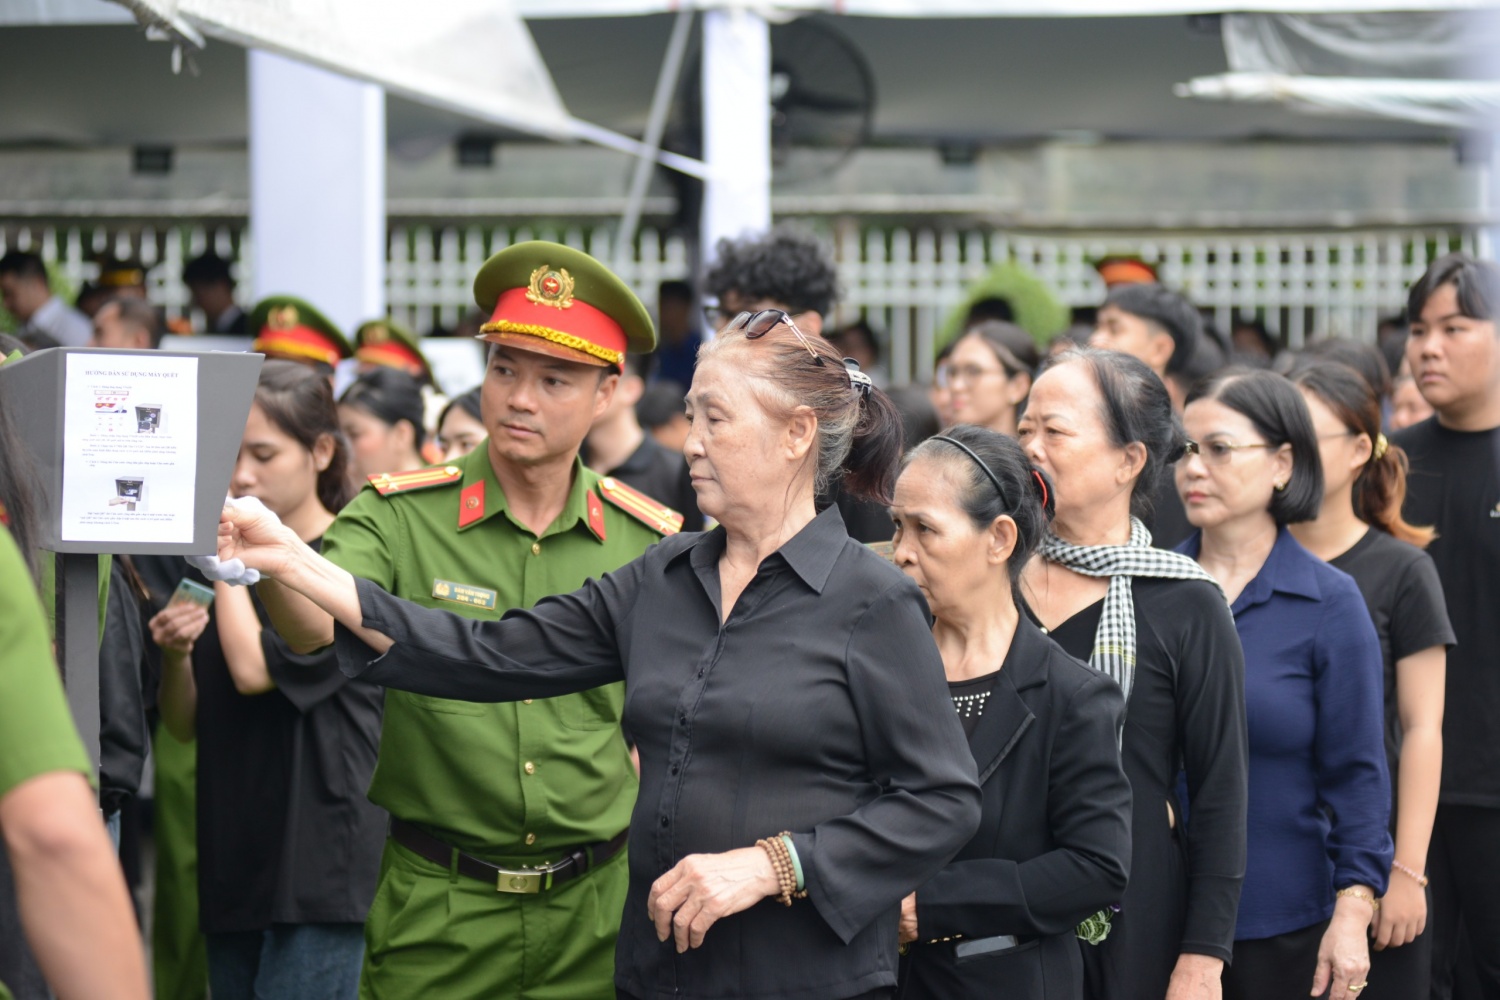 TP HCM: Người dân đội nắng chờ viếng Tổng Bí thư Nguyễn Phú Trọng